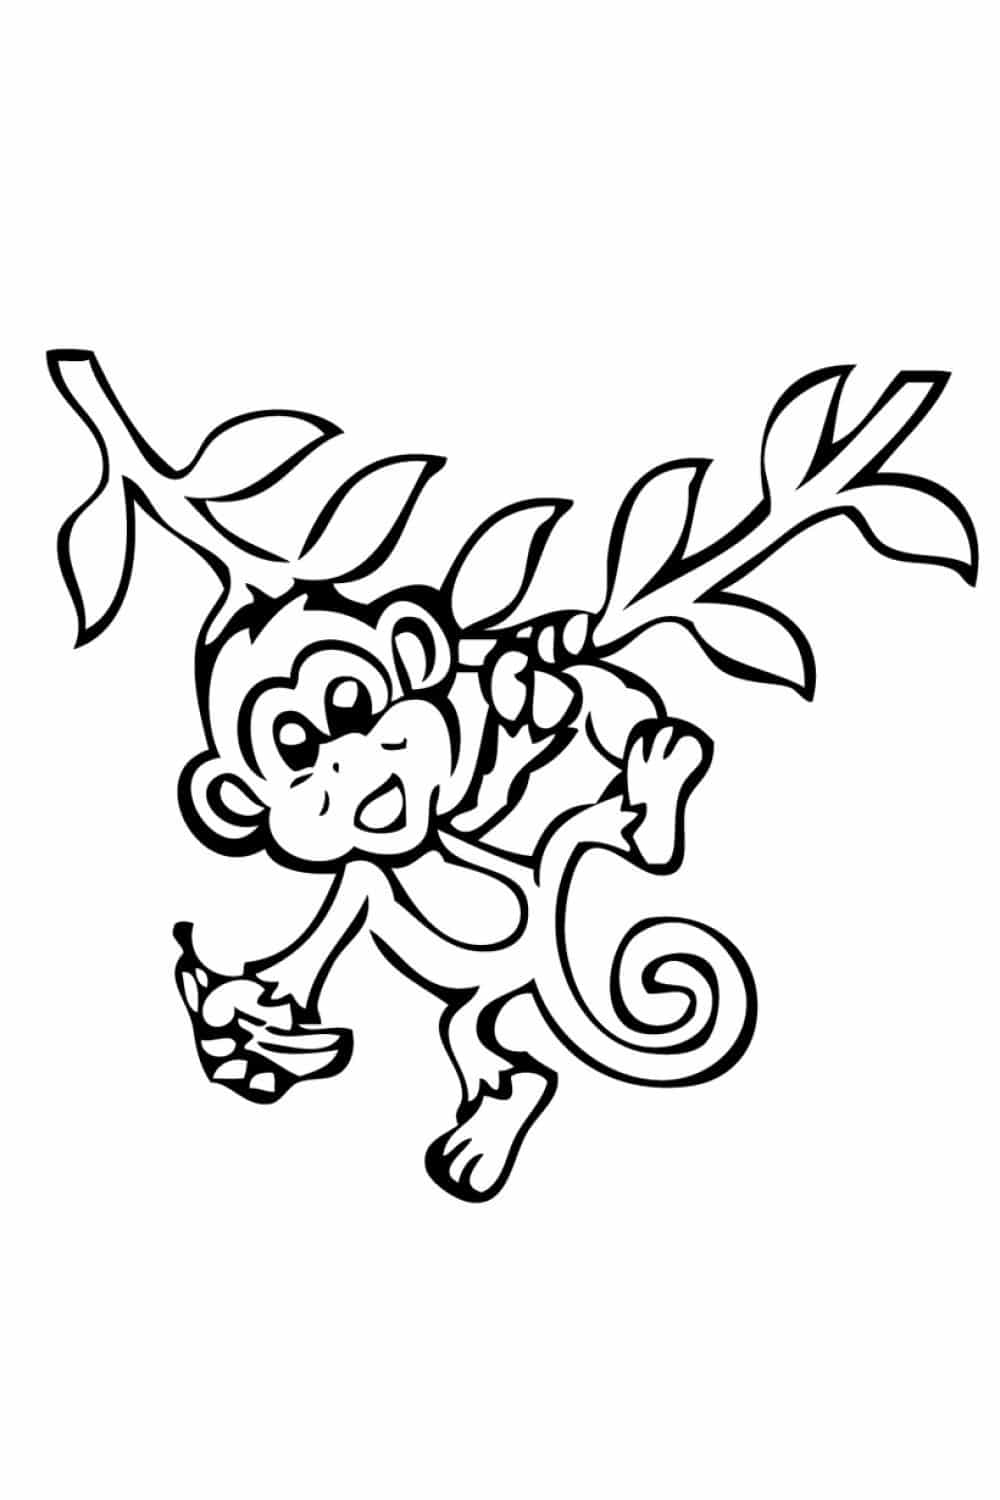 דף צביעה ציור לצביעה של קופיף תלוי על עץ עם בננה ביד